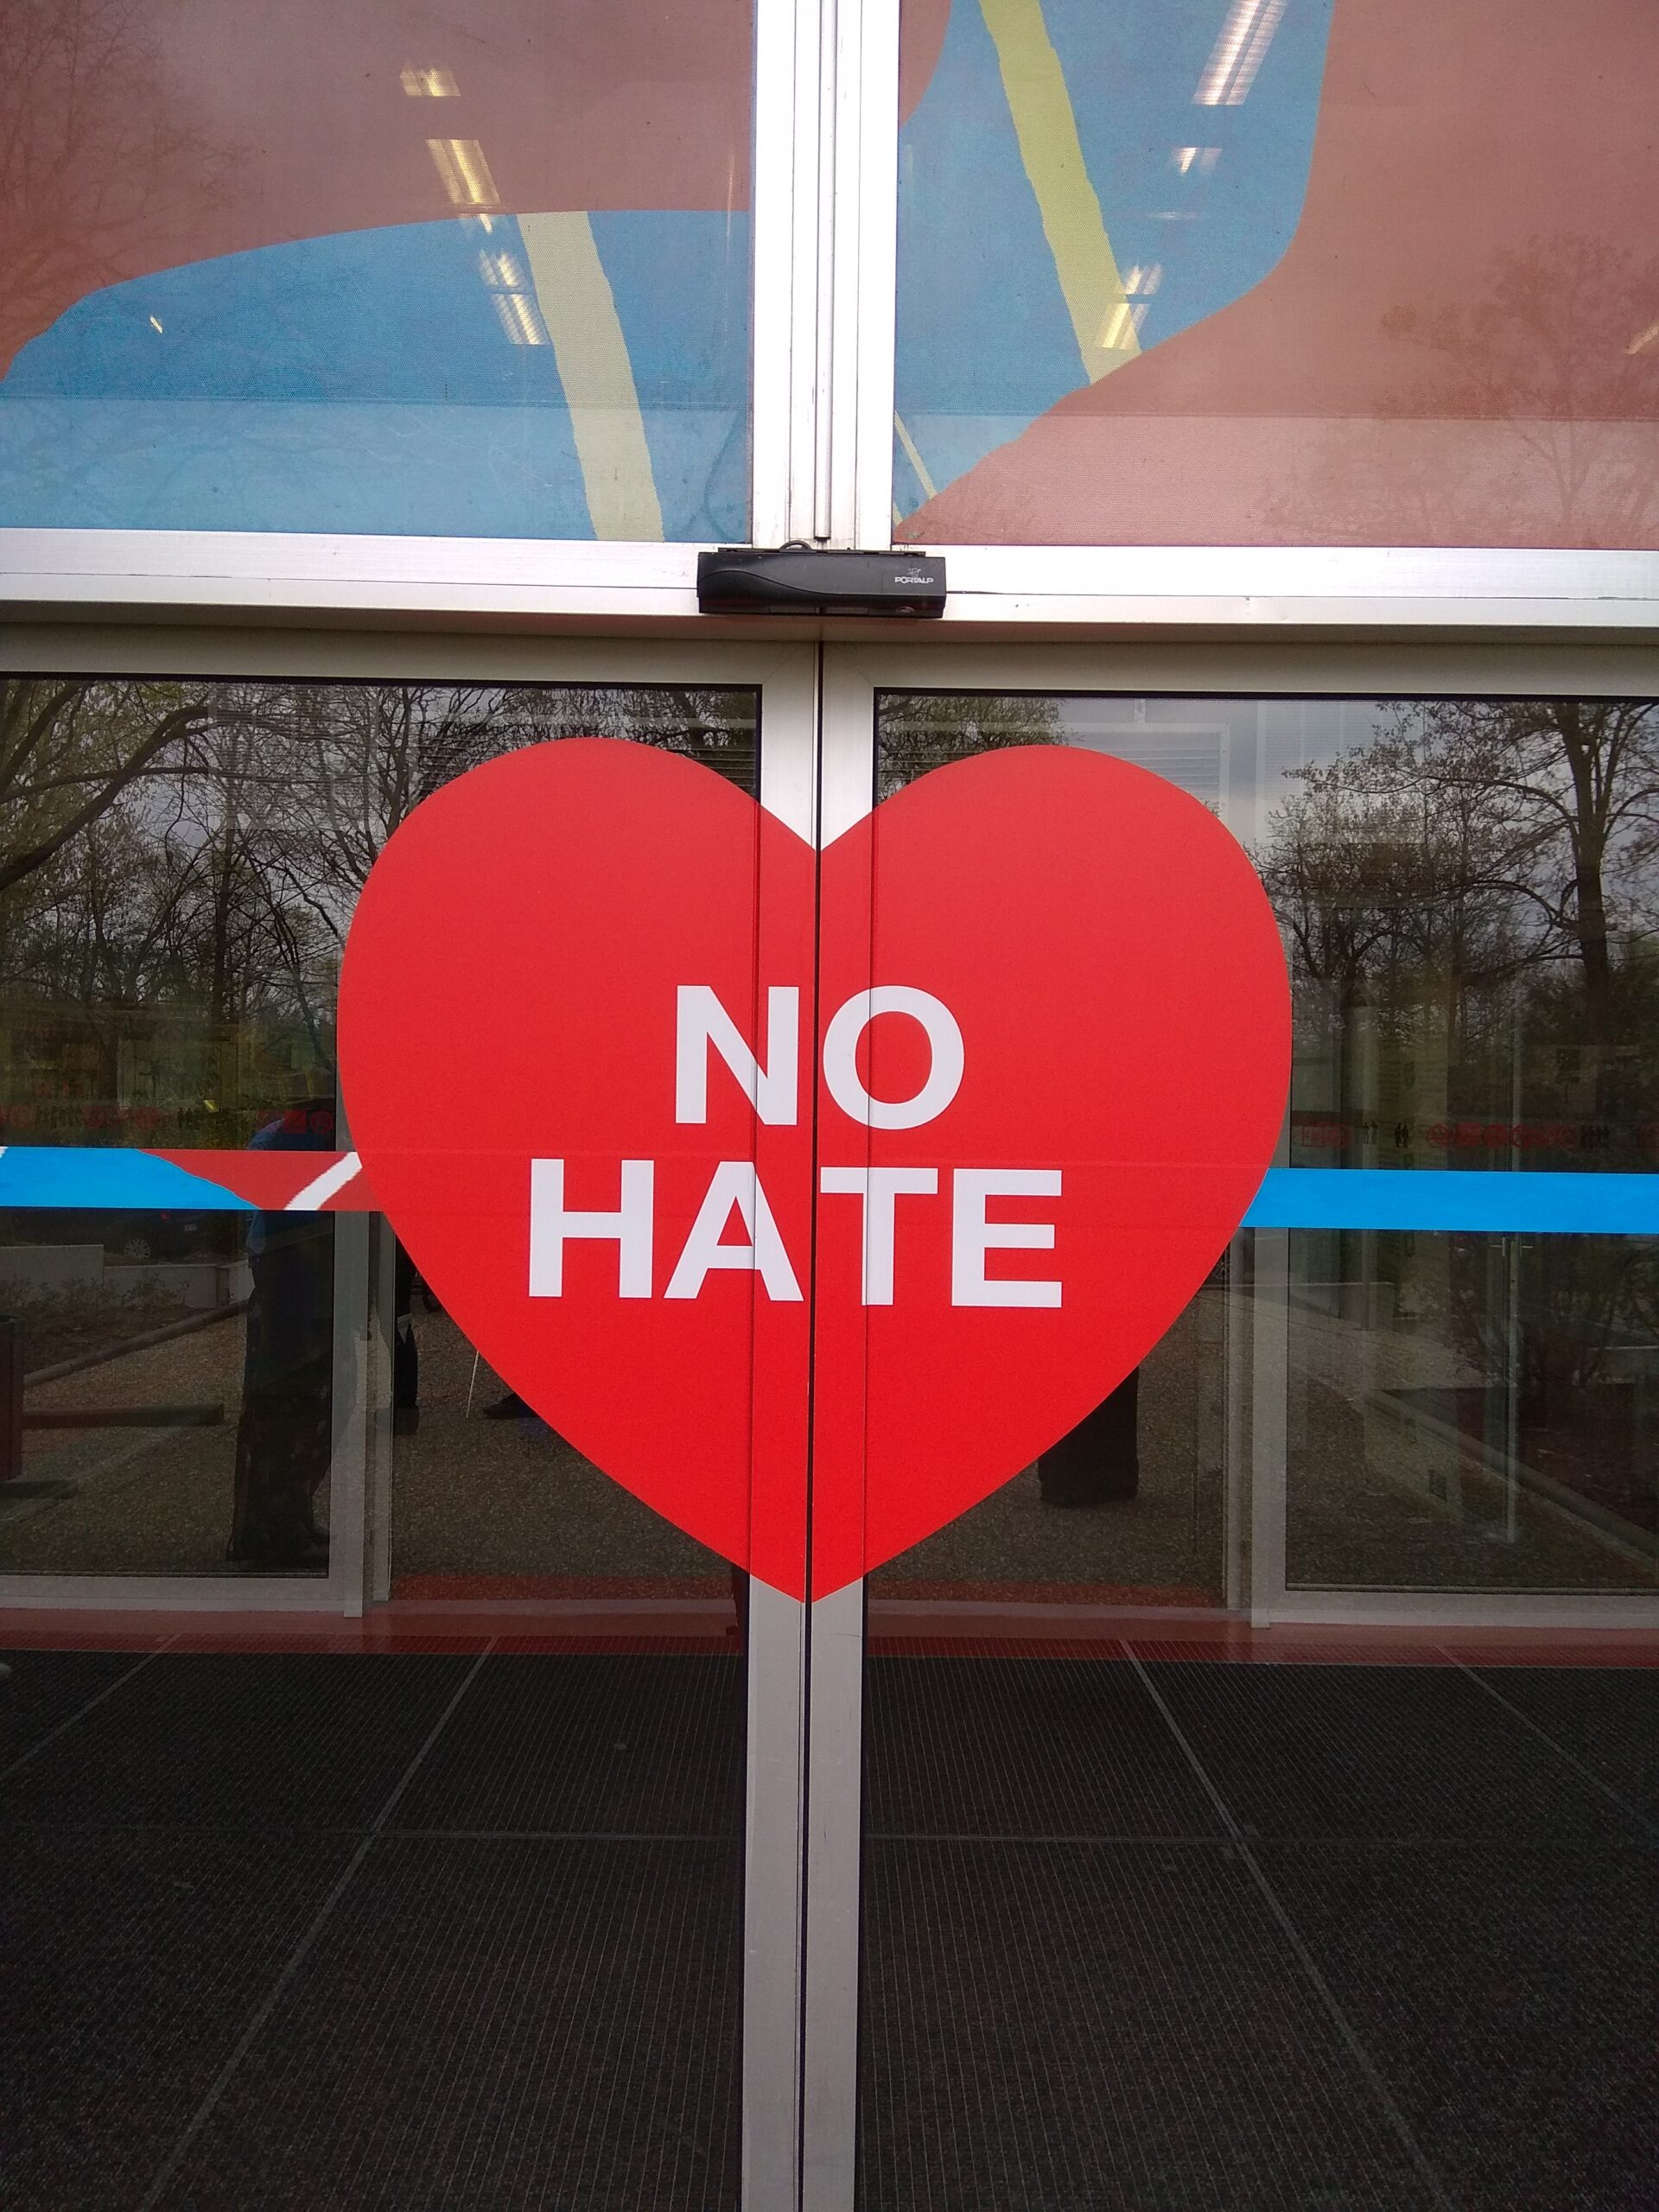 La campaña #NoHate del Consejo de Europa finaliza con el compromiso de mantener vivo el movimiento contra el discurso de odio